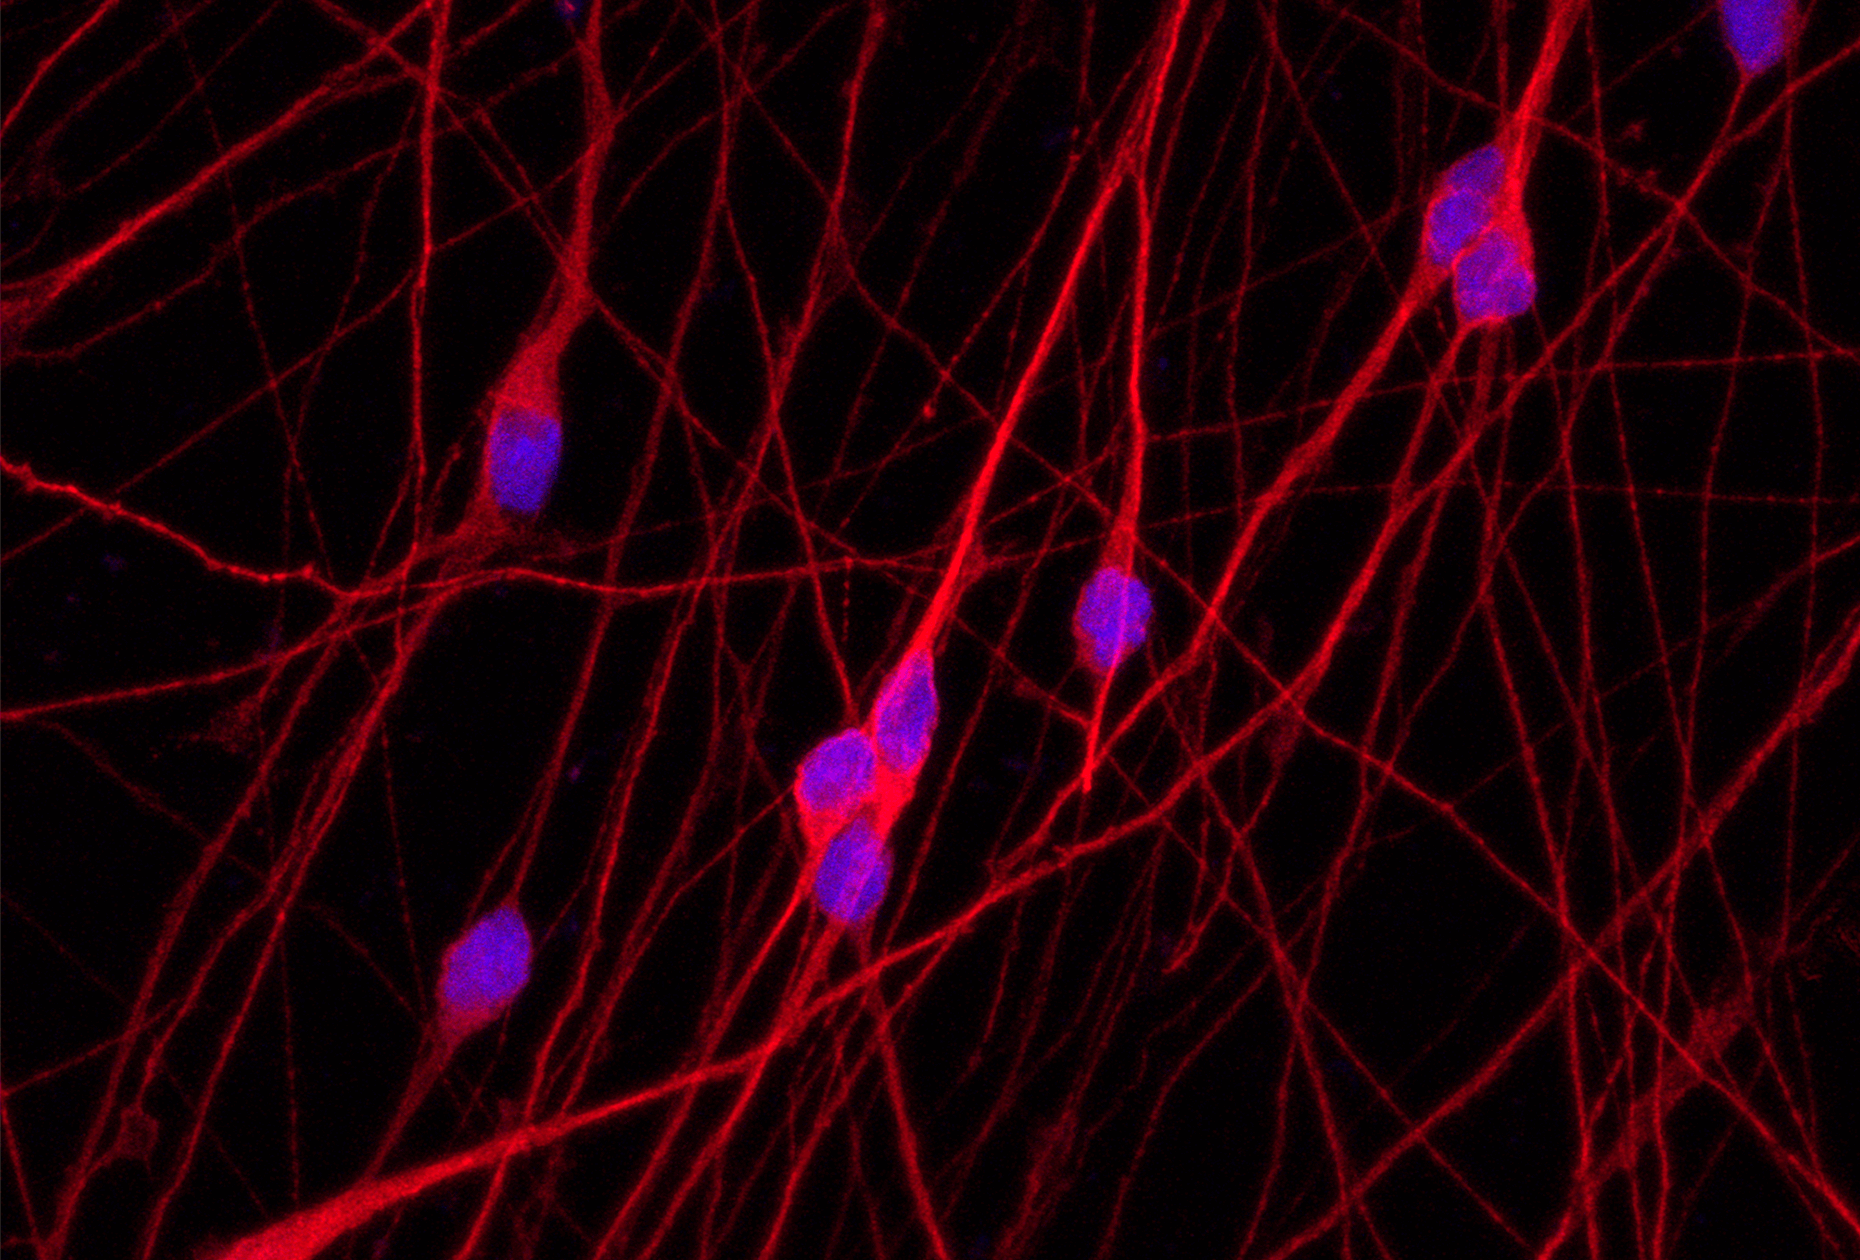 bit.bio human iPSC-derived glutamatergic neurons